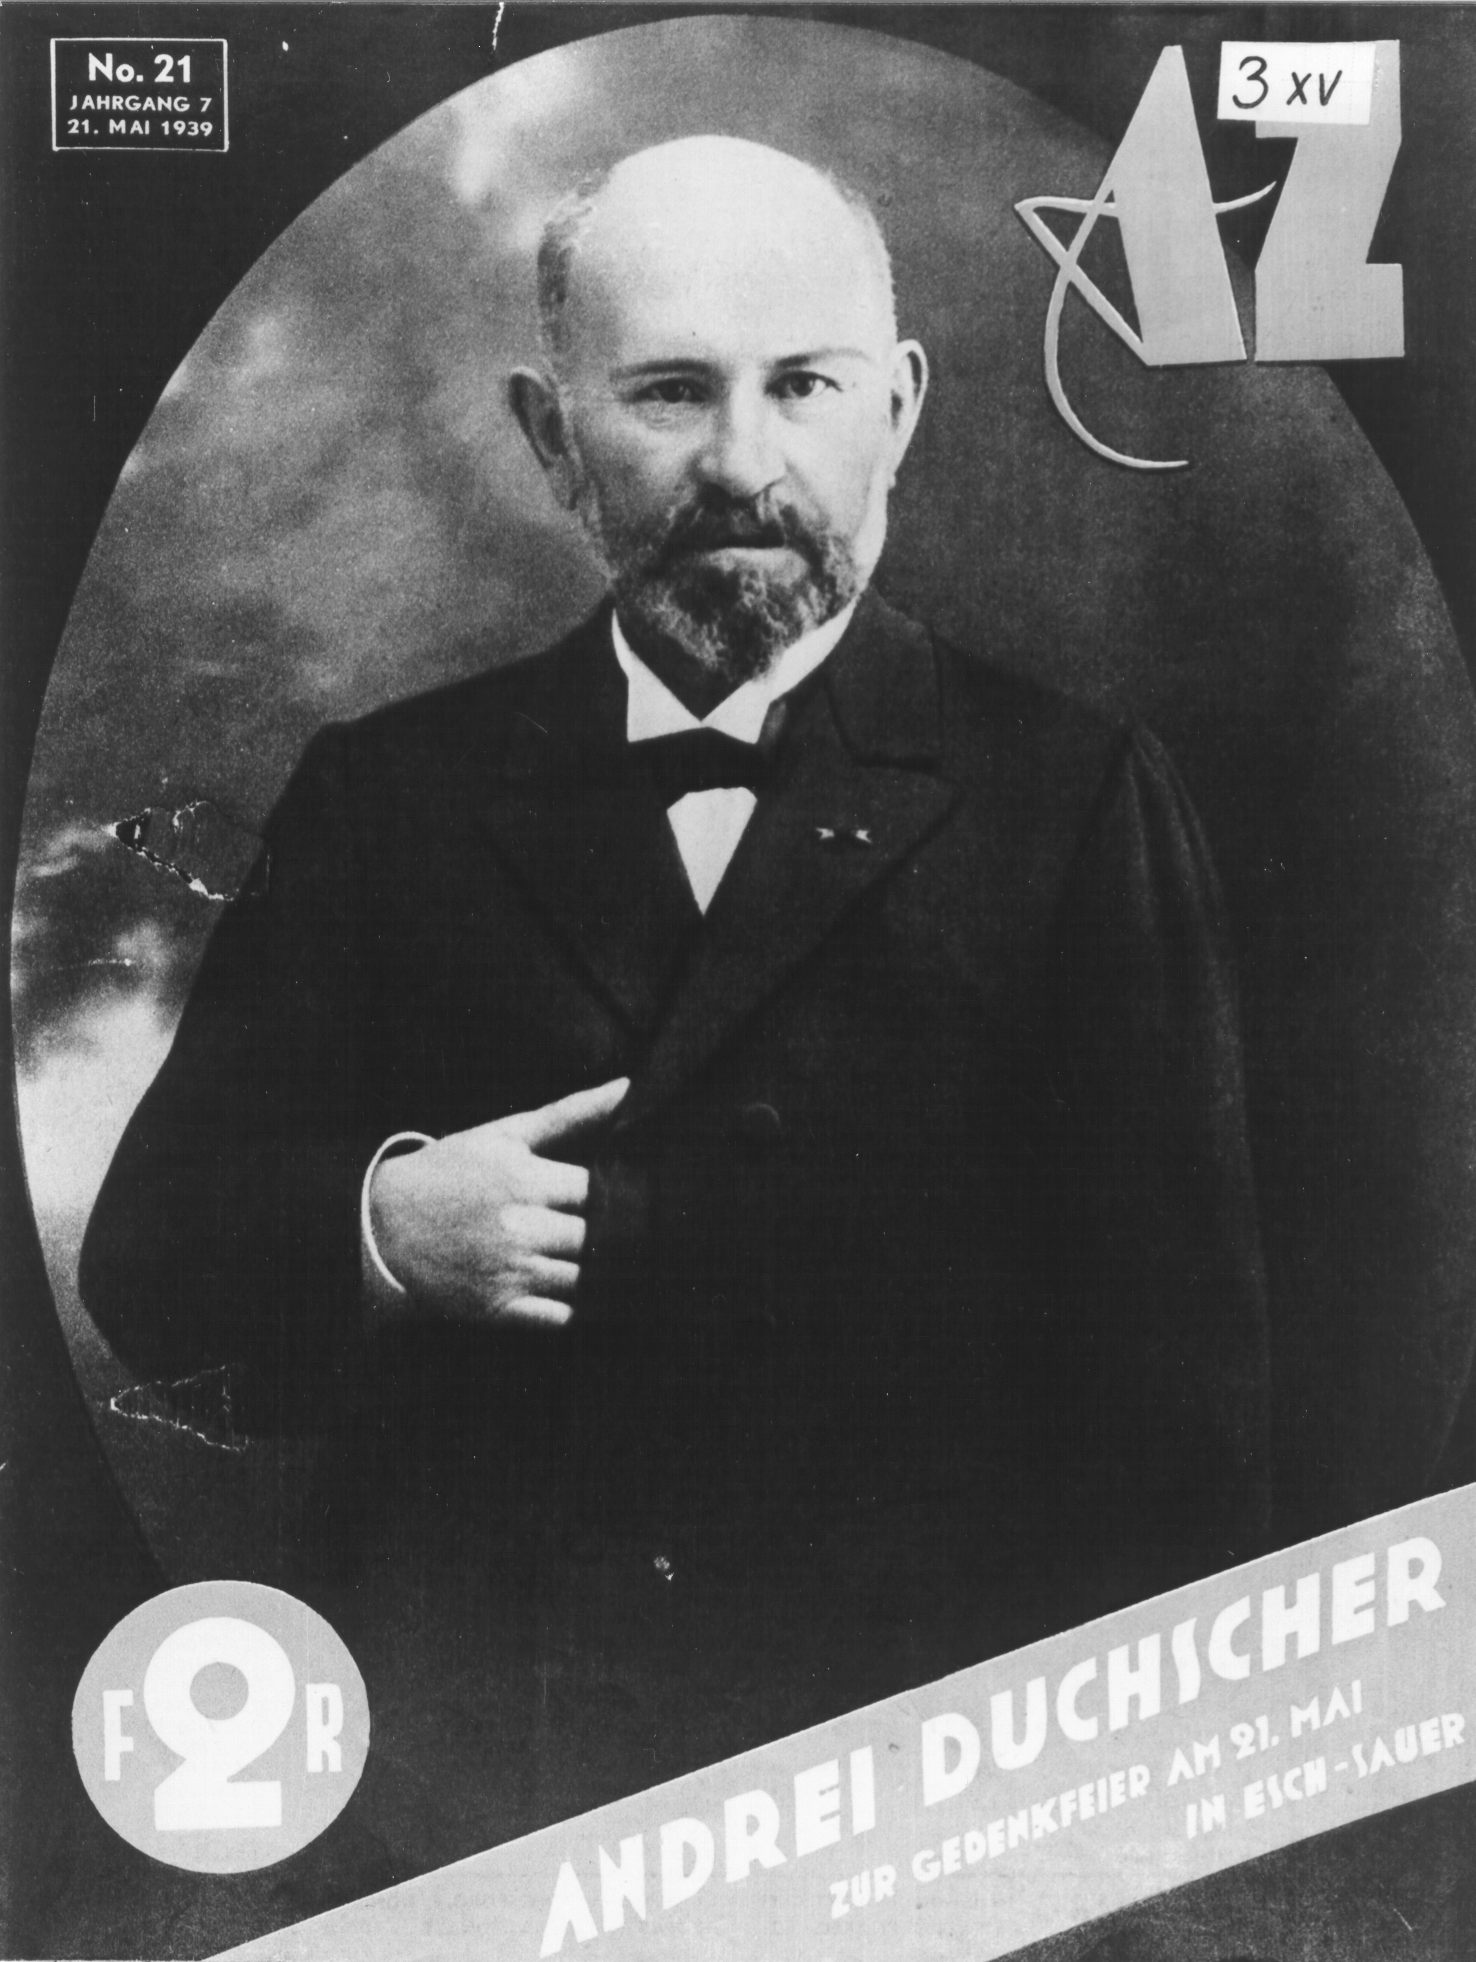 
					
						André Duchscher
					
					